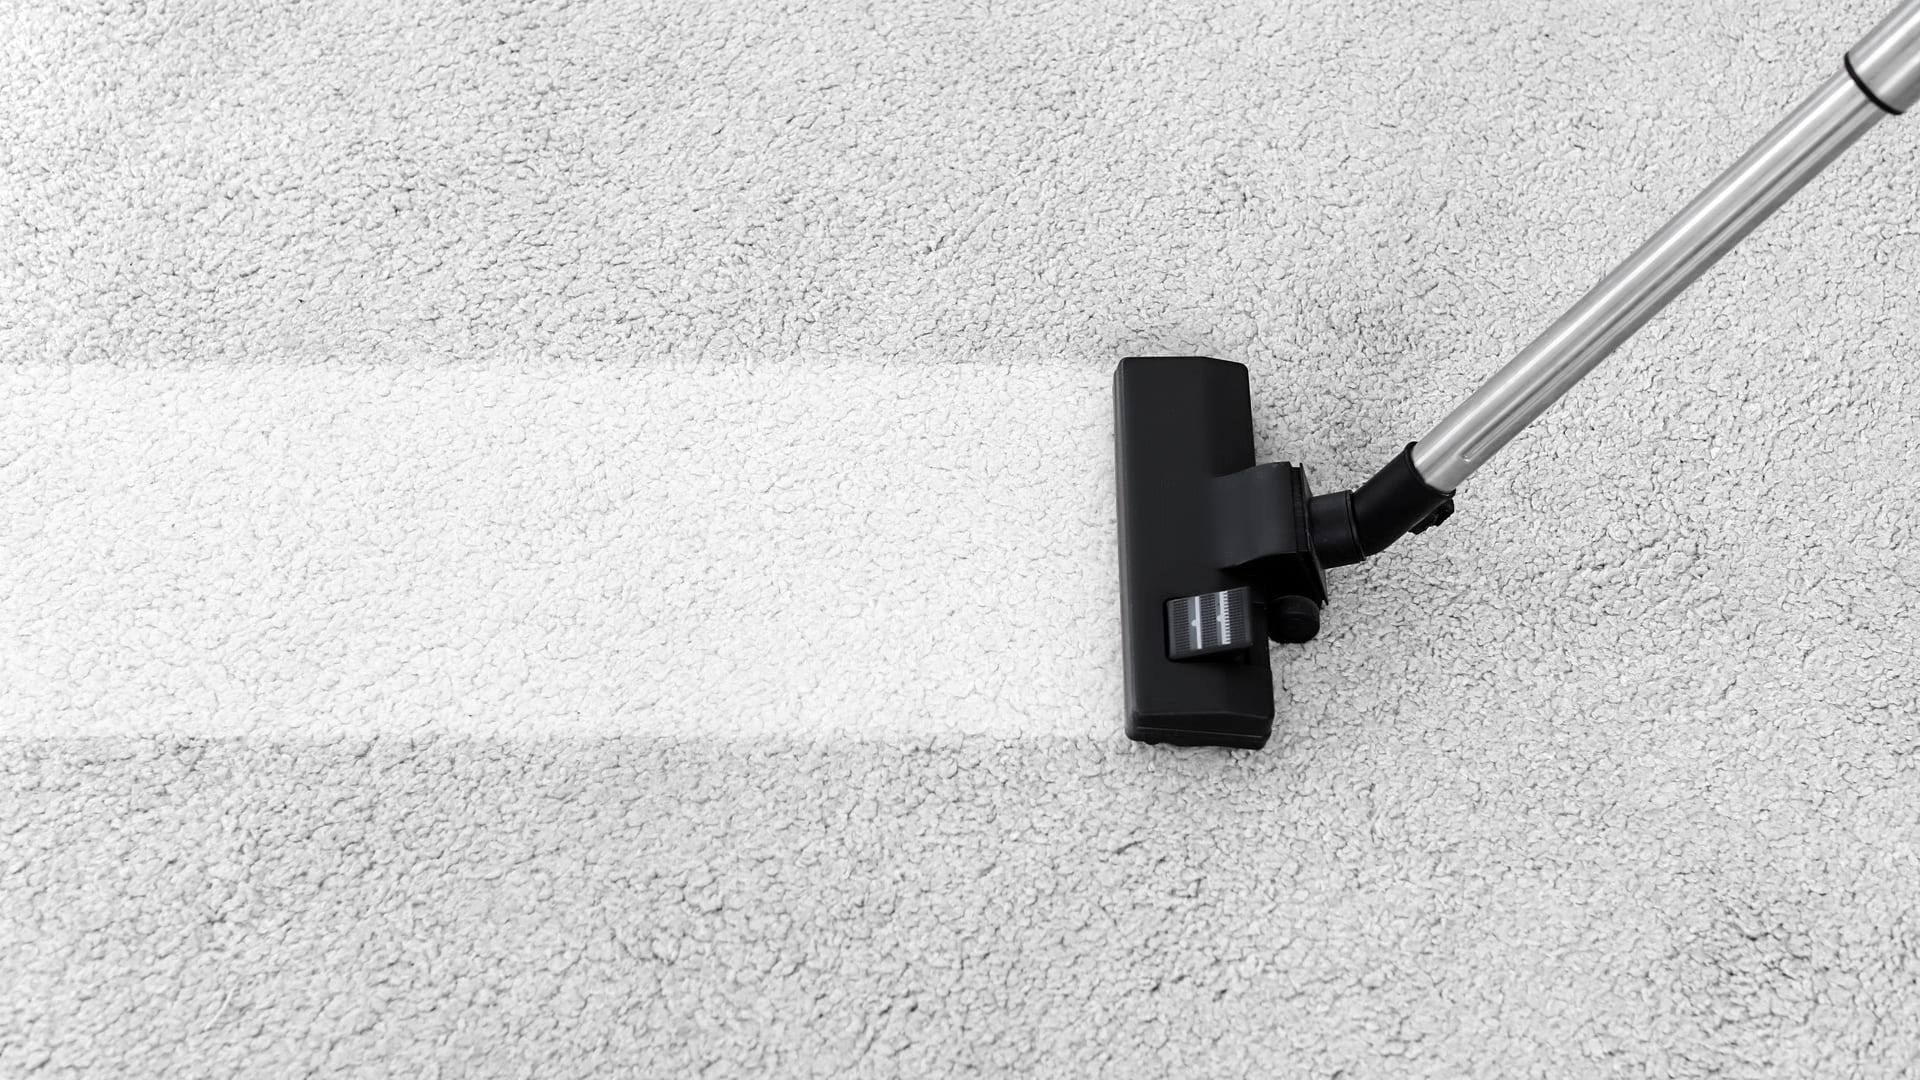 Aspirador de pó sendo usado para limpar um carpete cinza